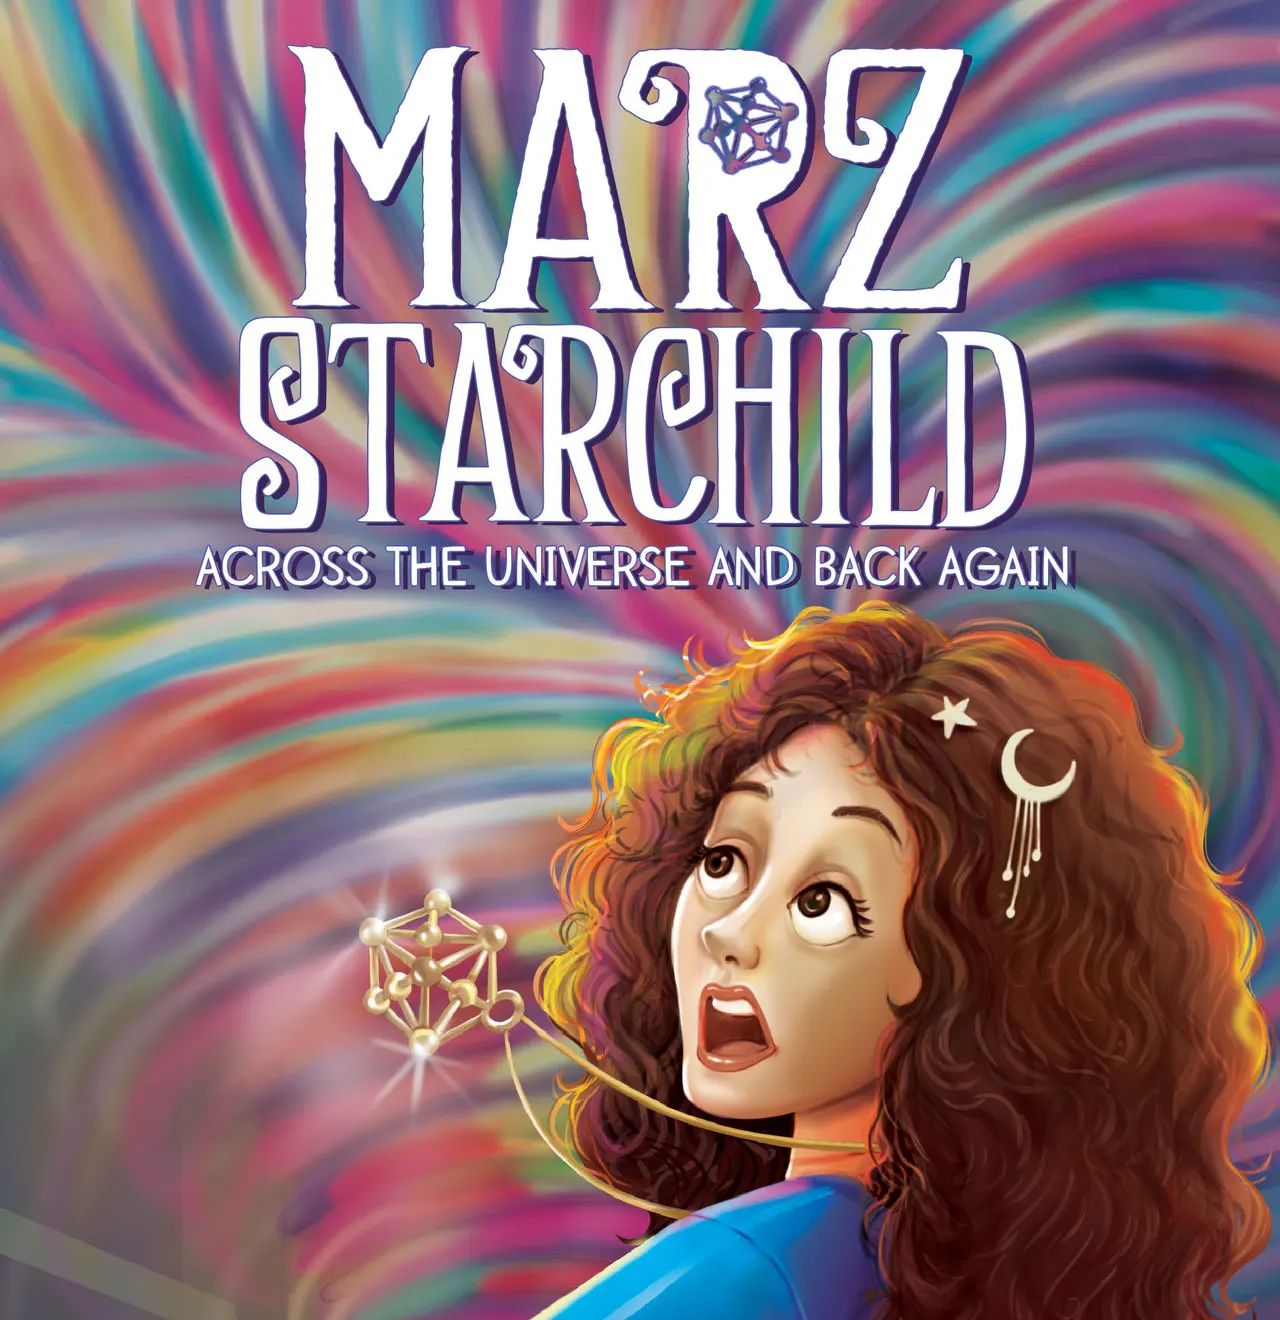 Marz Starchild